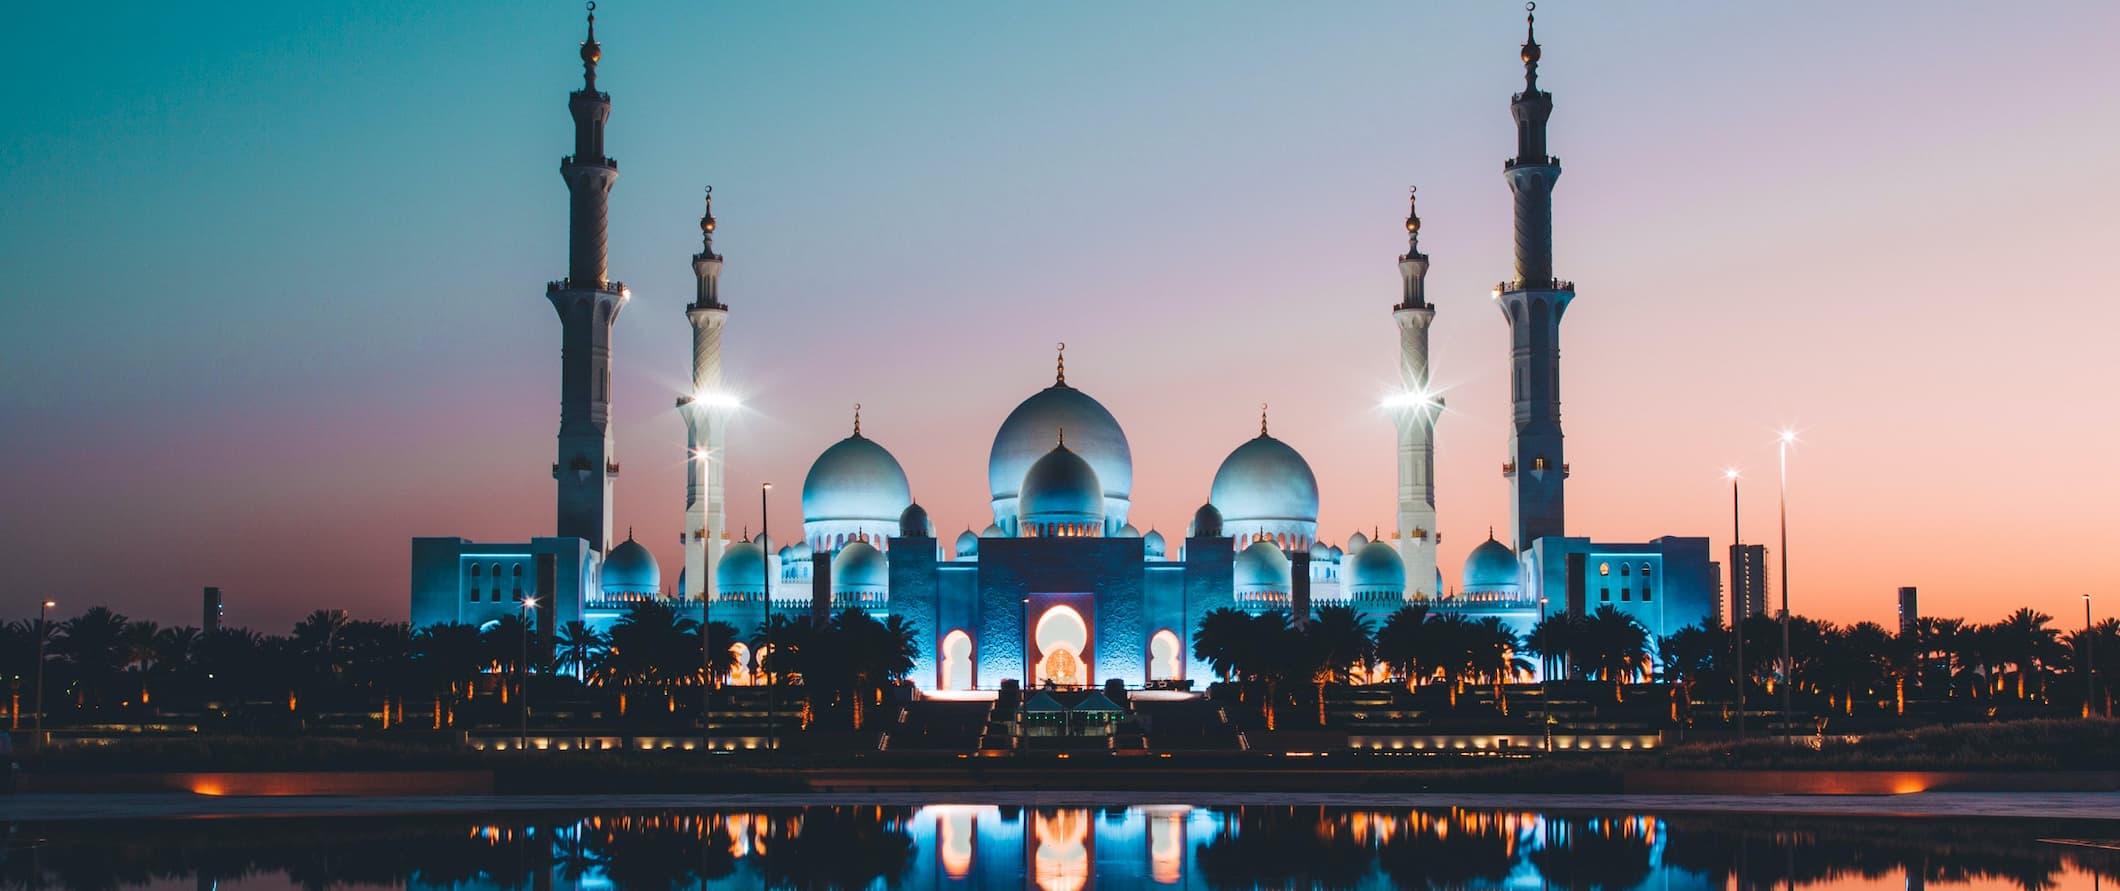 Uma grande mesquita, iluminada à noite pela água de Dubai